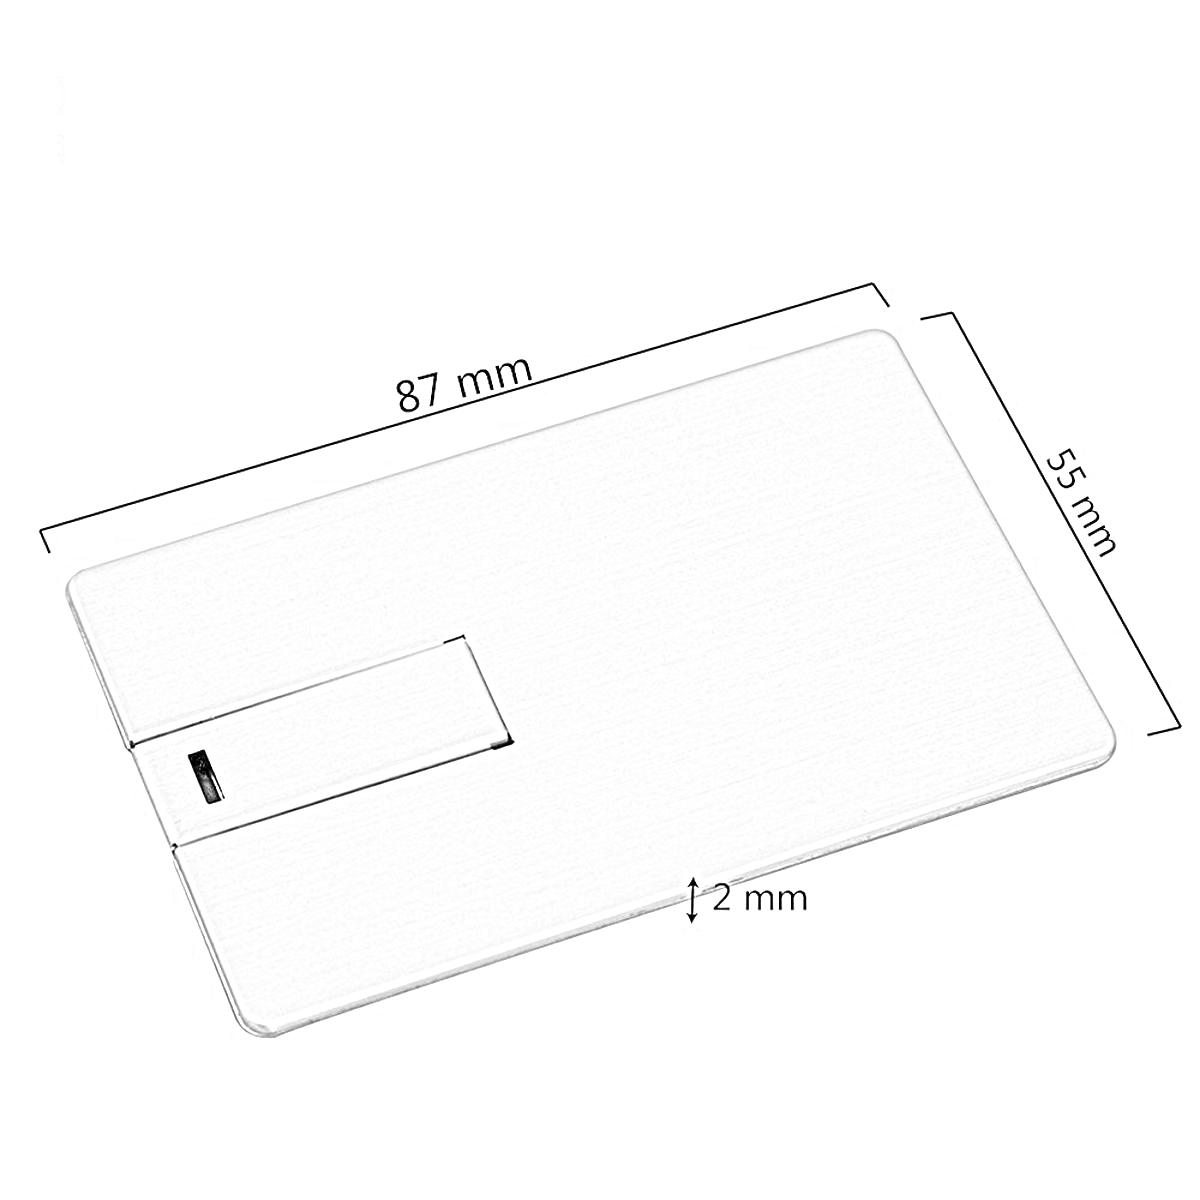 USB Metall-Kreditkarte ® GERMANY USB-Stick (Schwarz, 128 GB)